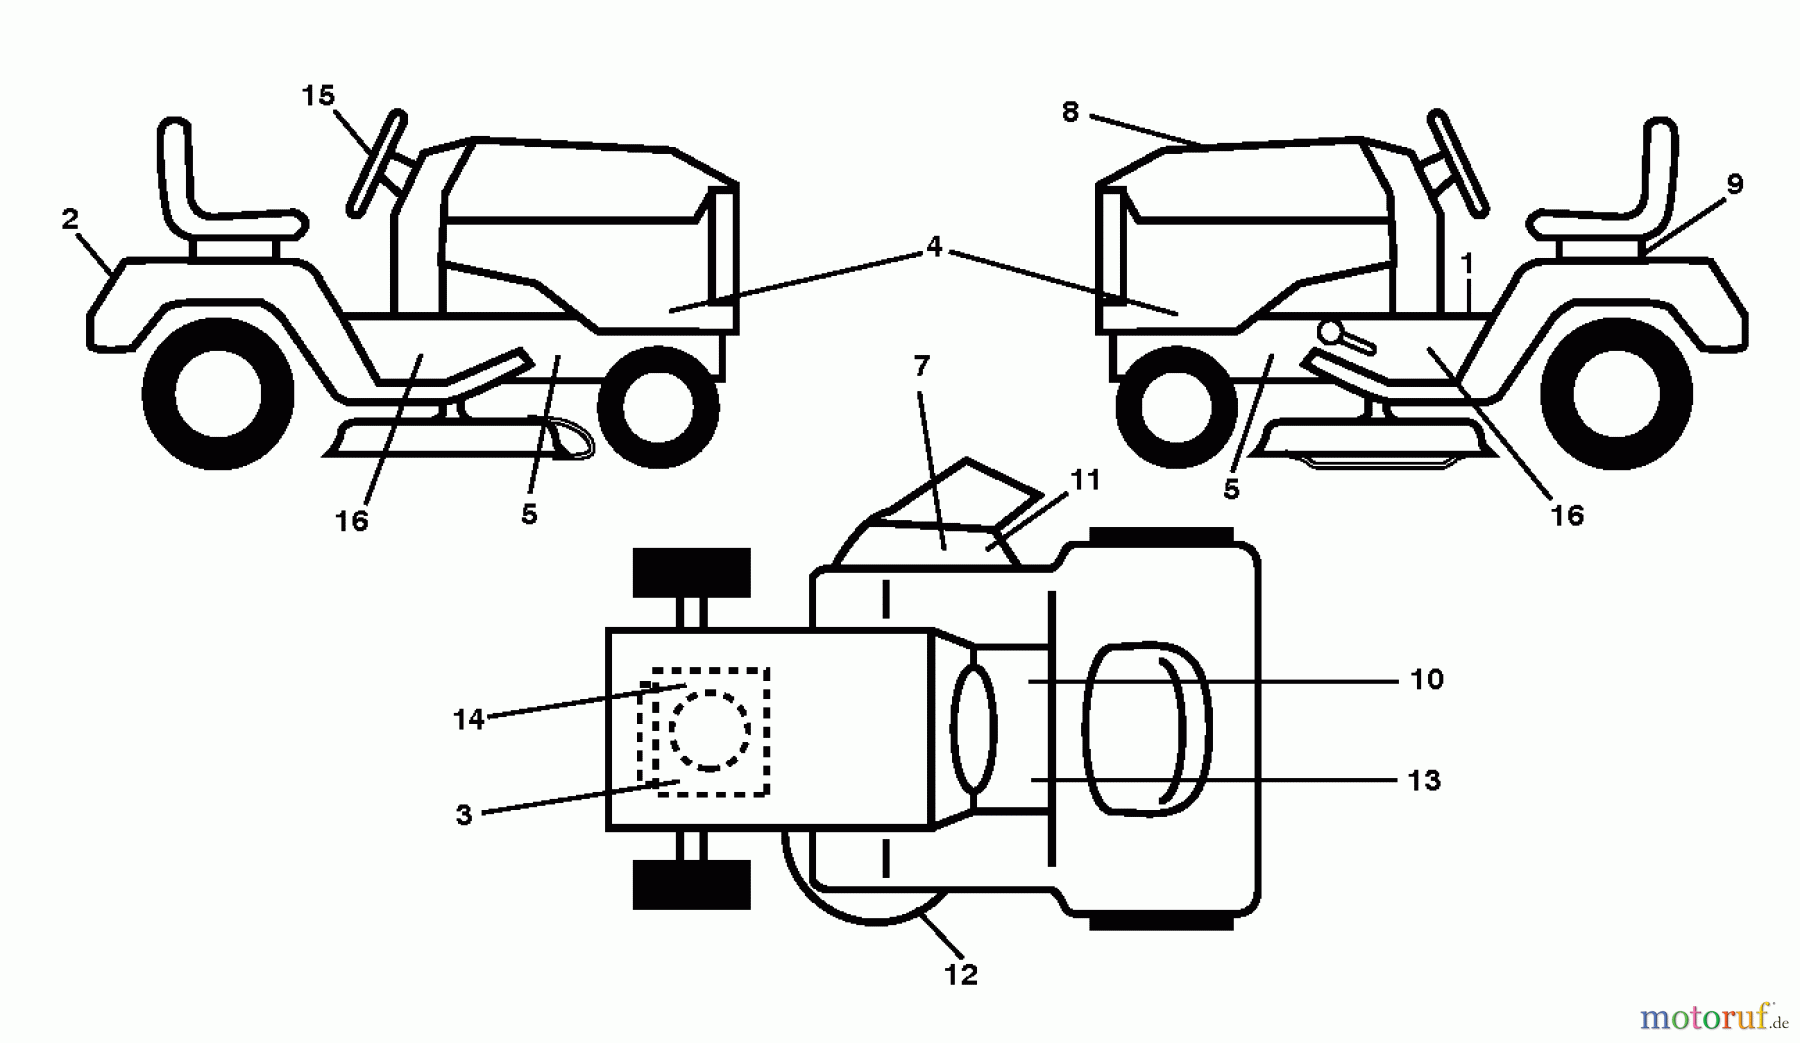  Jonsered Rasen  und Garten Traktoren LT2216 (96041010207) - Jonsered Lawn & Garden Tractor (2013-05) DECALS